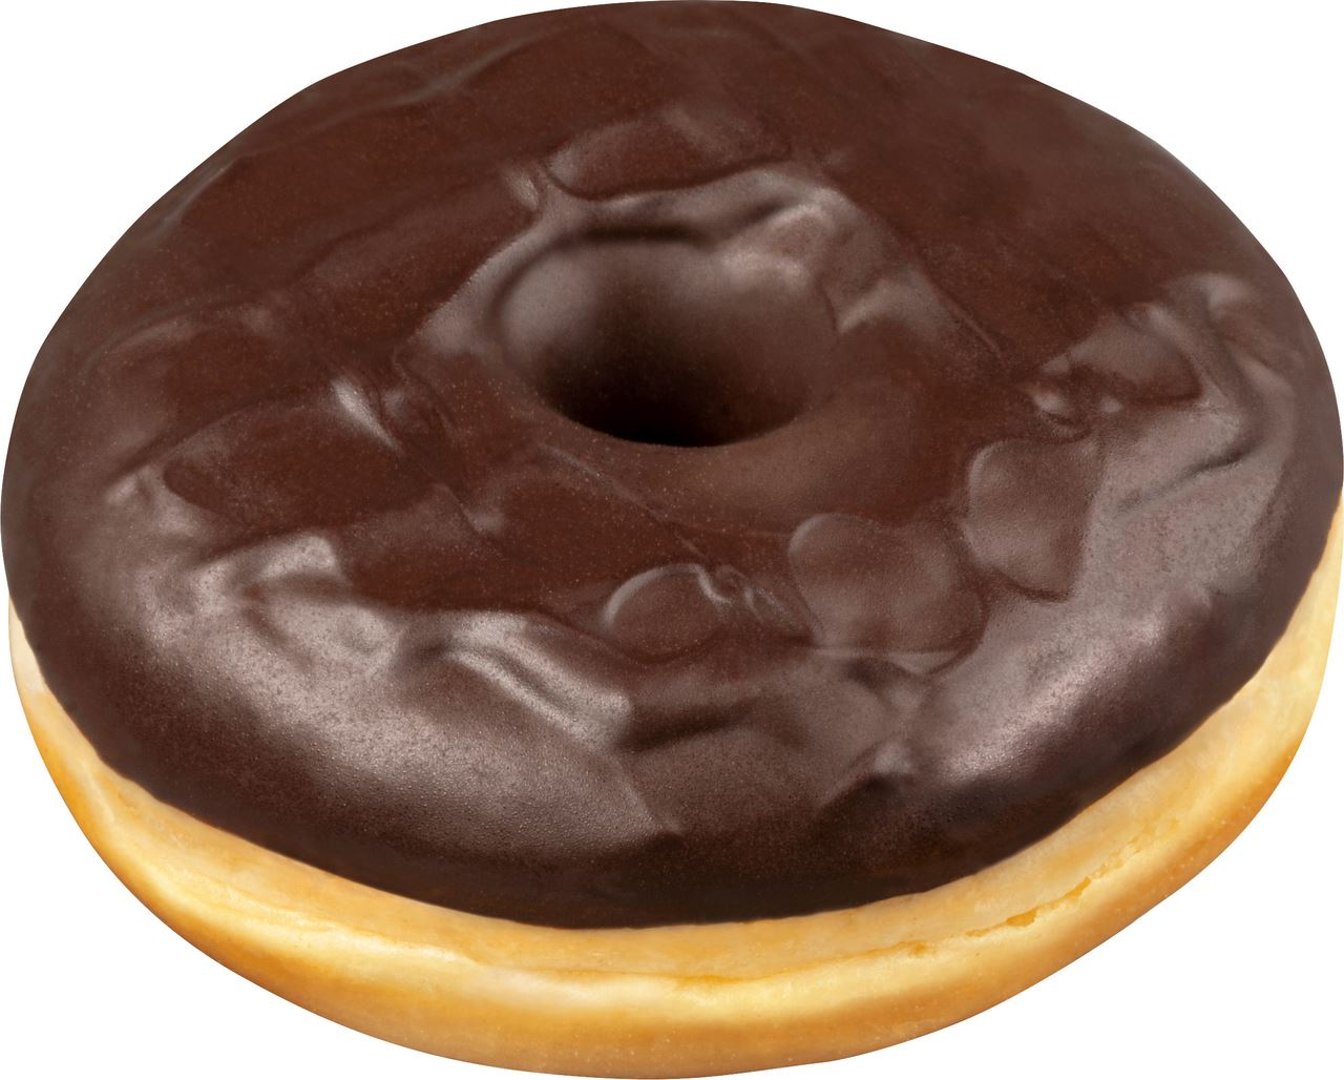 Baker & Baker - Dark Choc Donut vegan, 12 Stück à ca. 54 g, tiefgefroren - 648 g Tray